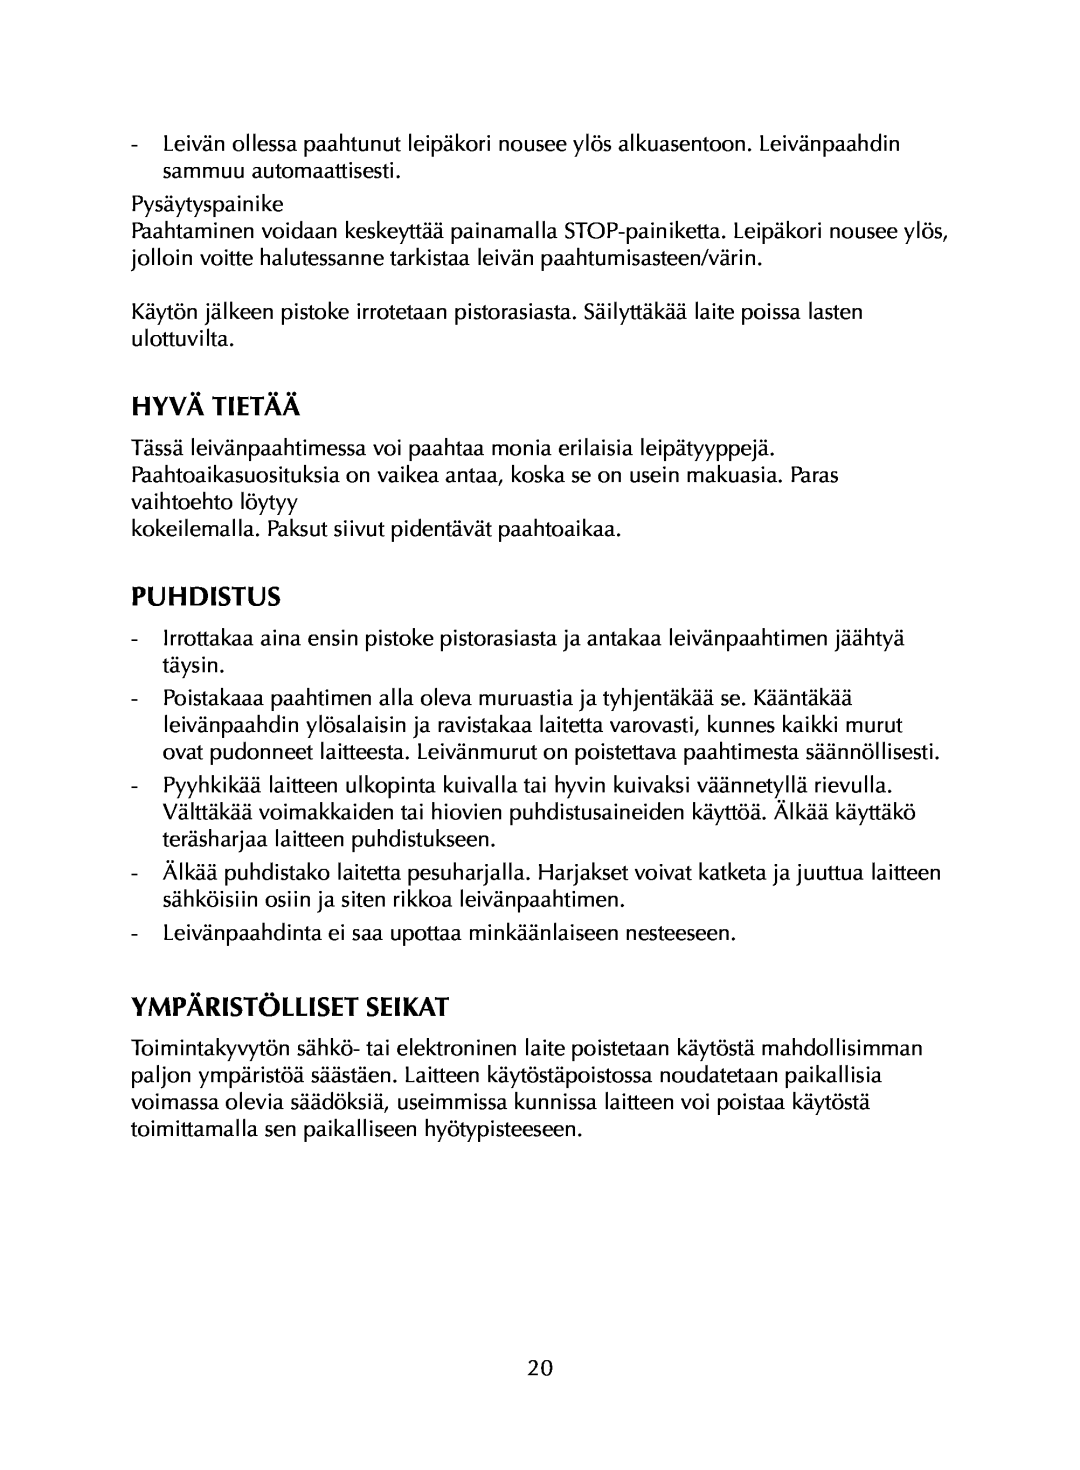 Melissa AT-280, AT-480 manual Hyvä Tietää, Puhdistus, Ympäristölliset Seikat 